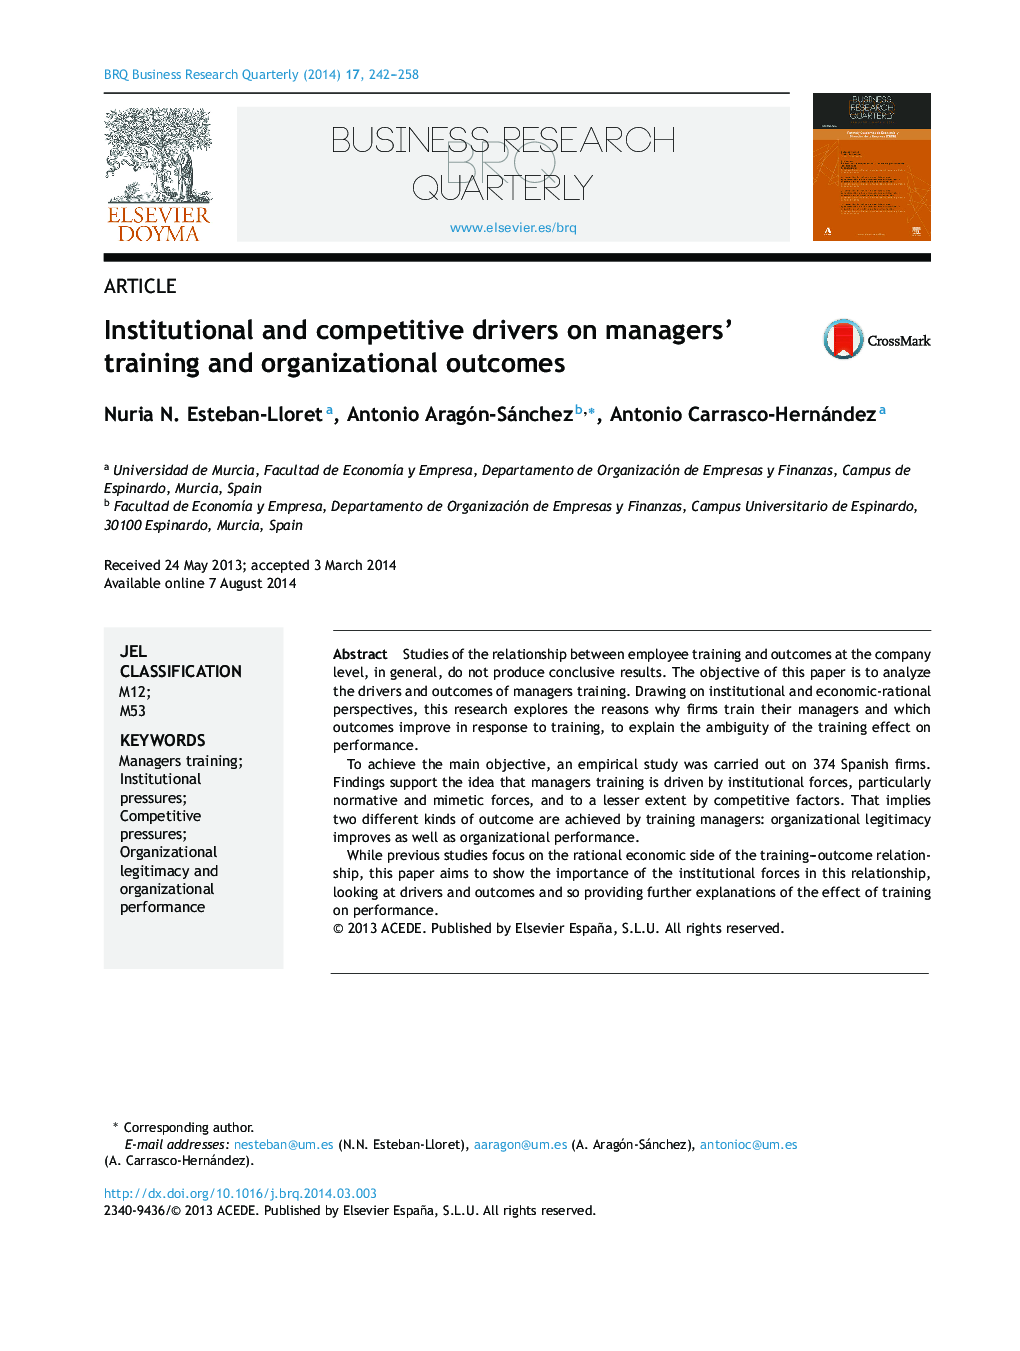 رانندگان سازمانی و رقابتی در مدیران آموزش و نتایج سازمانی 